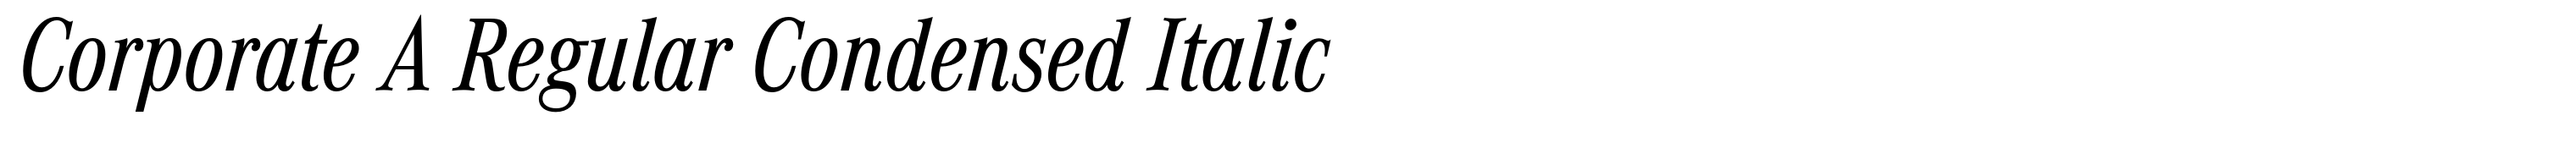 Corporate A Regular Condensed Italic